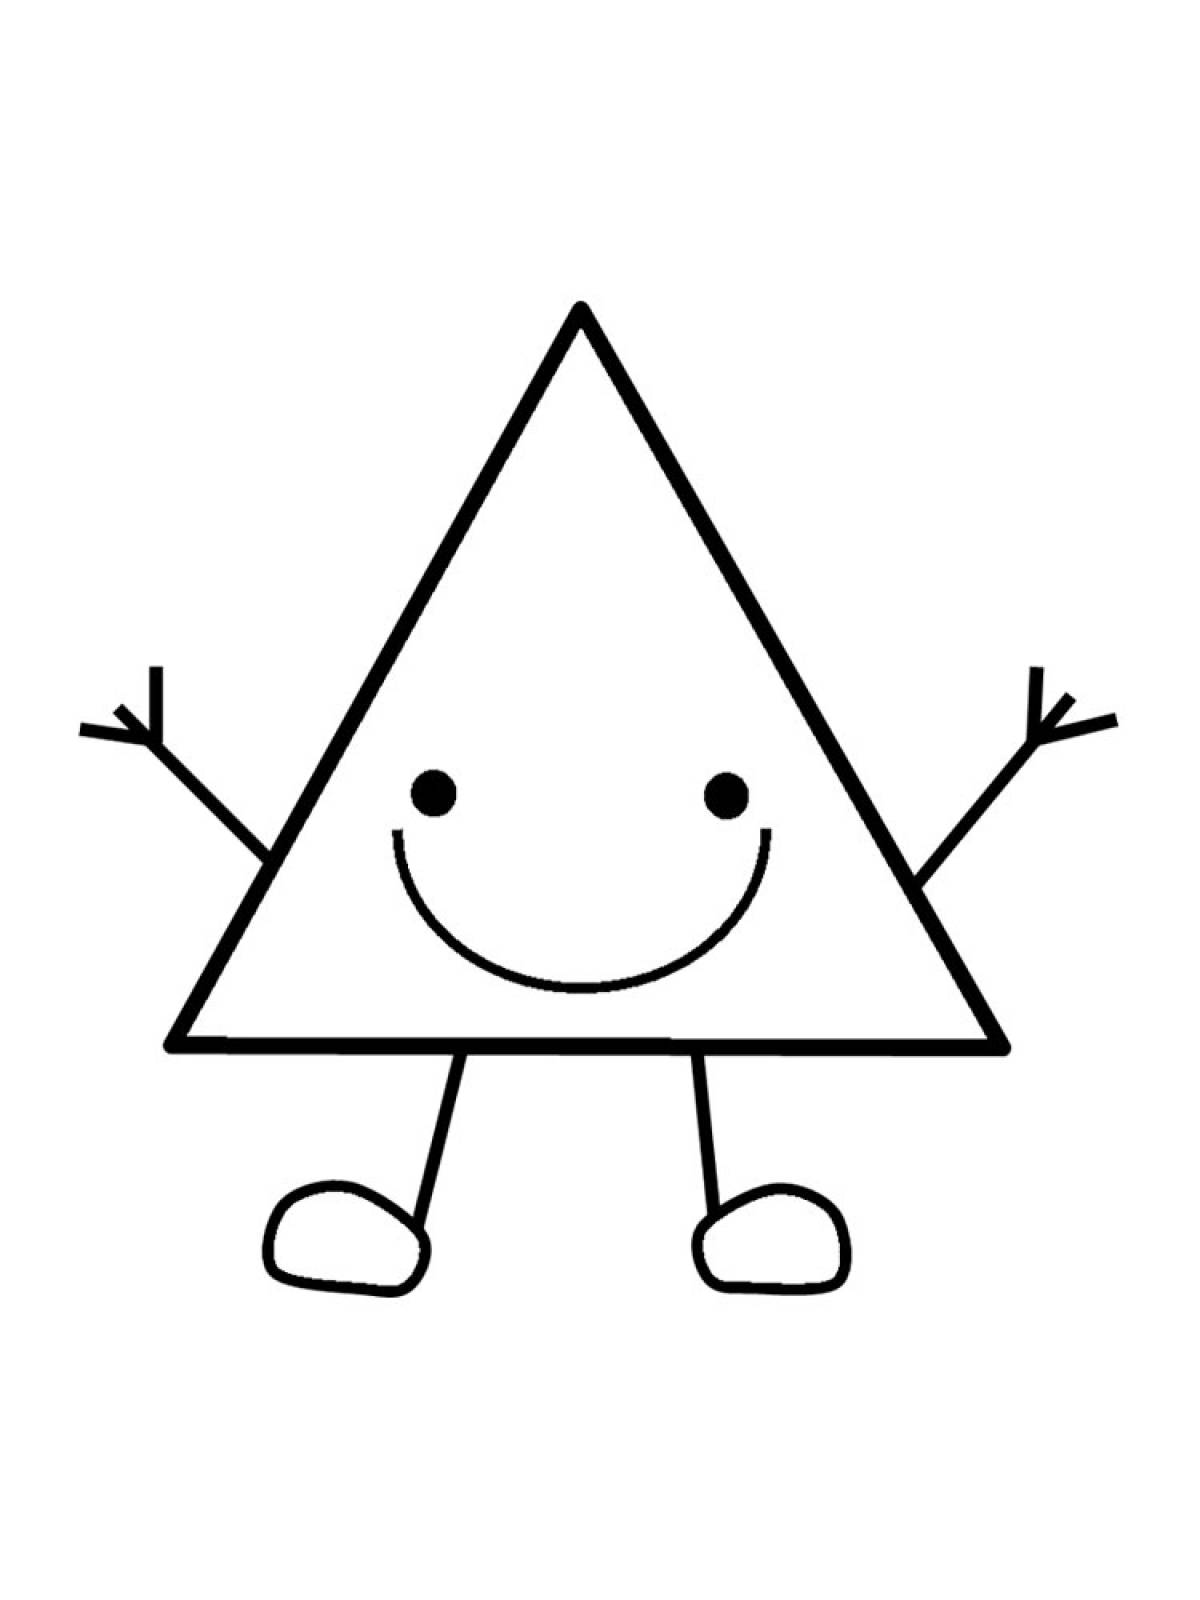 Треугольник раскрашаъ